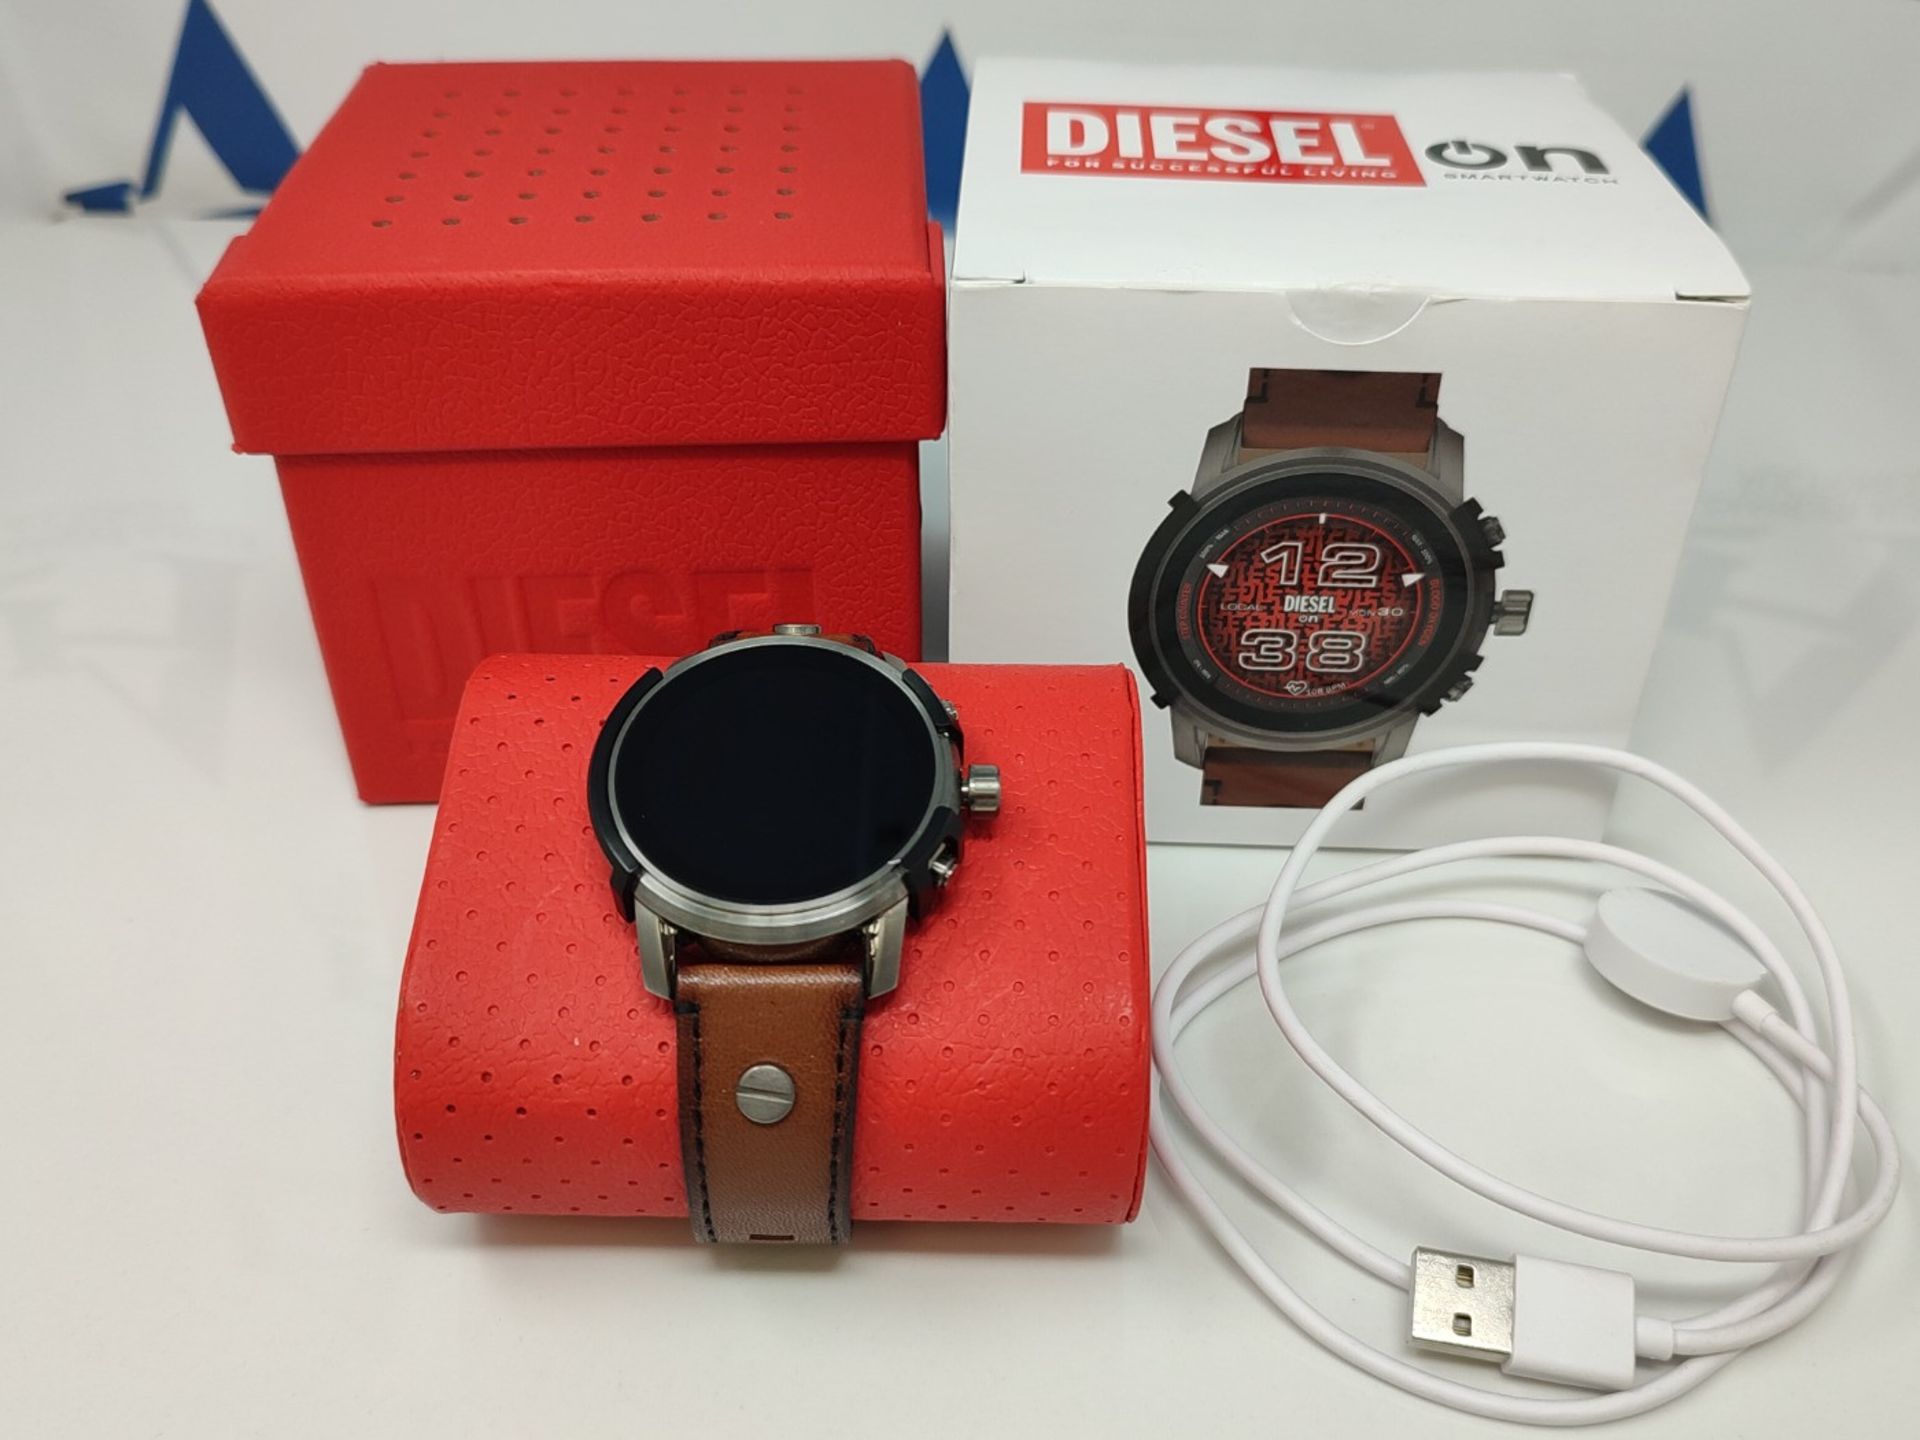 RRP £329.00 Diesel smartwacth for Men Gen 6 Touchscreen Smartwatch with Speaker, Heart Rate, NFC,